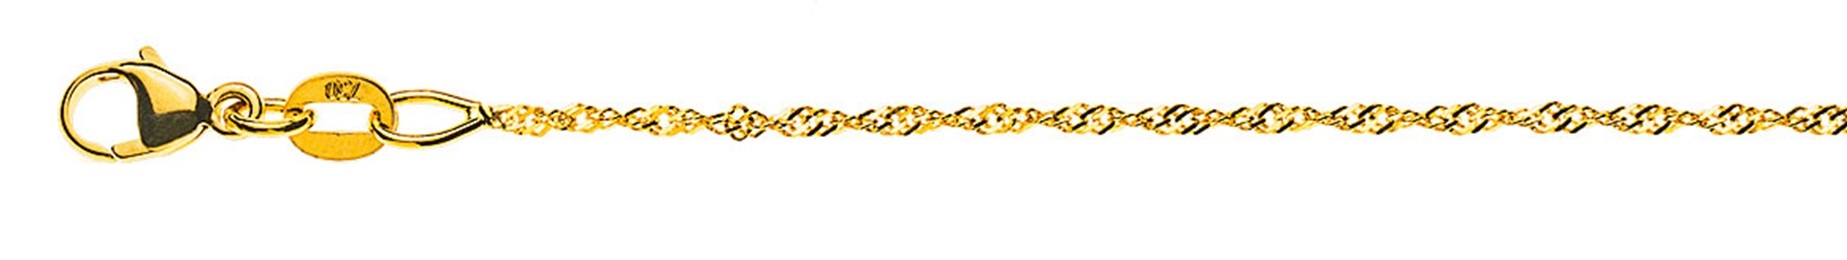 AURONOS Prestige Necklace Yellow Gold 18K Singapore Chain 38cm 1.2mm